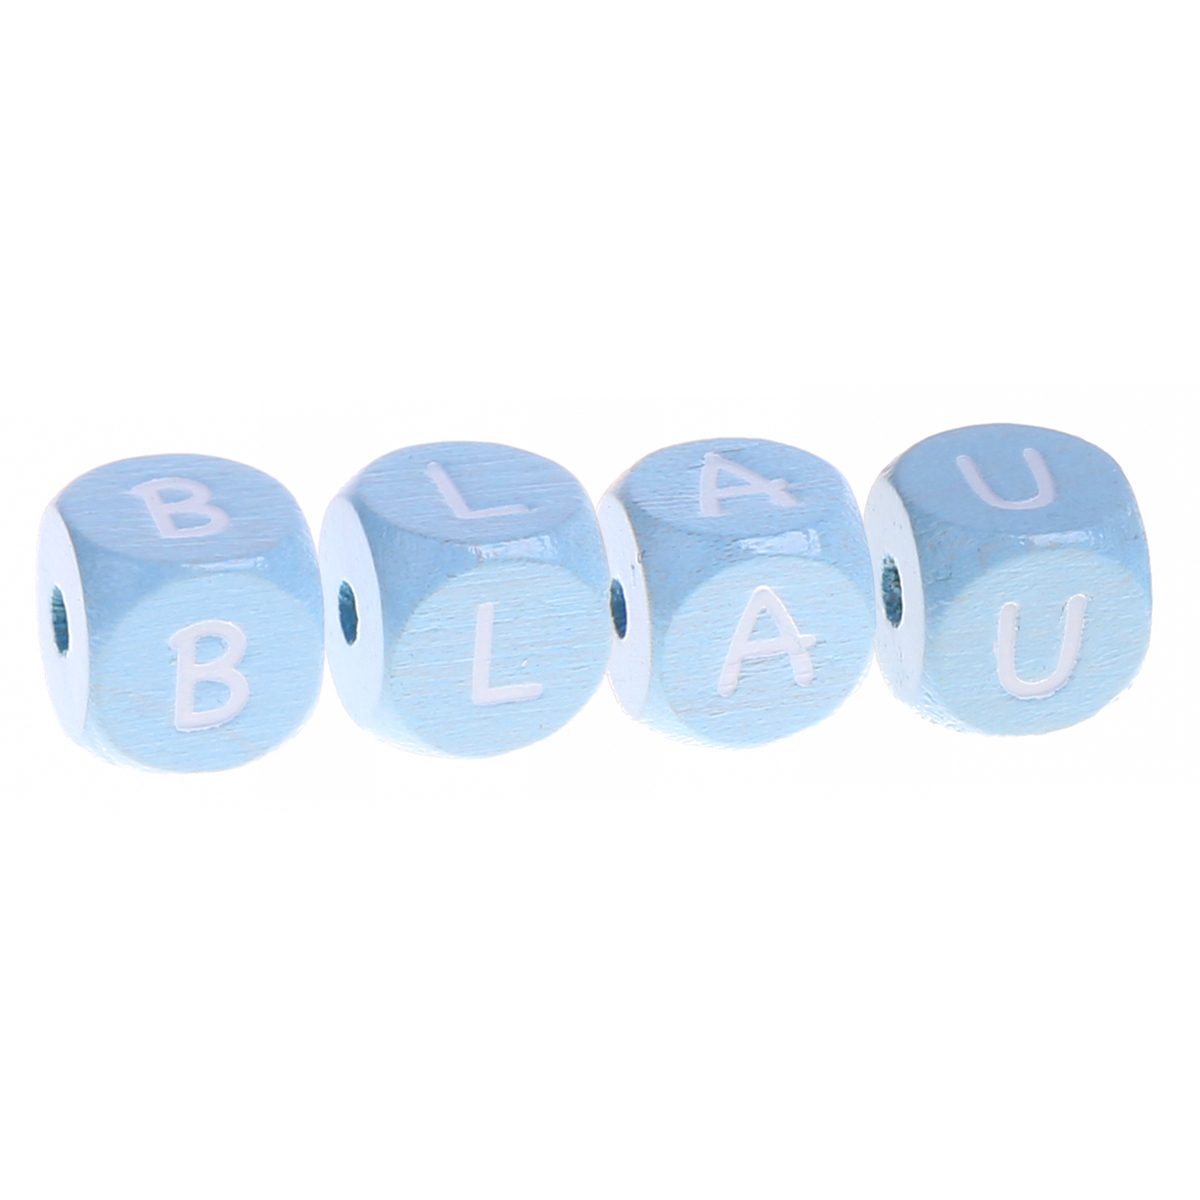 Perlen mit Buchstaben in blau